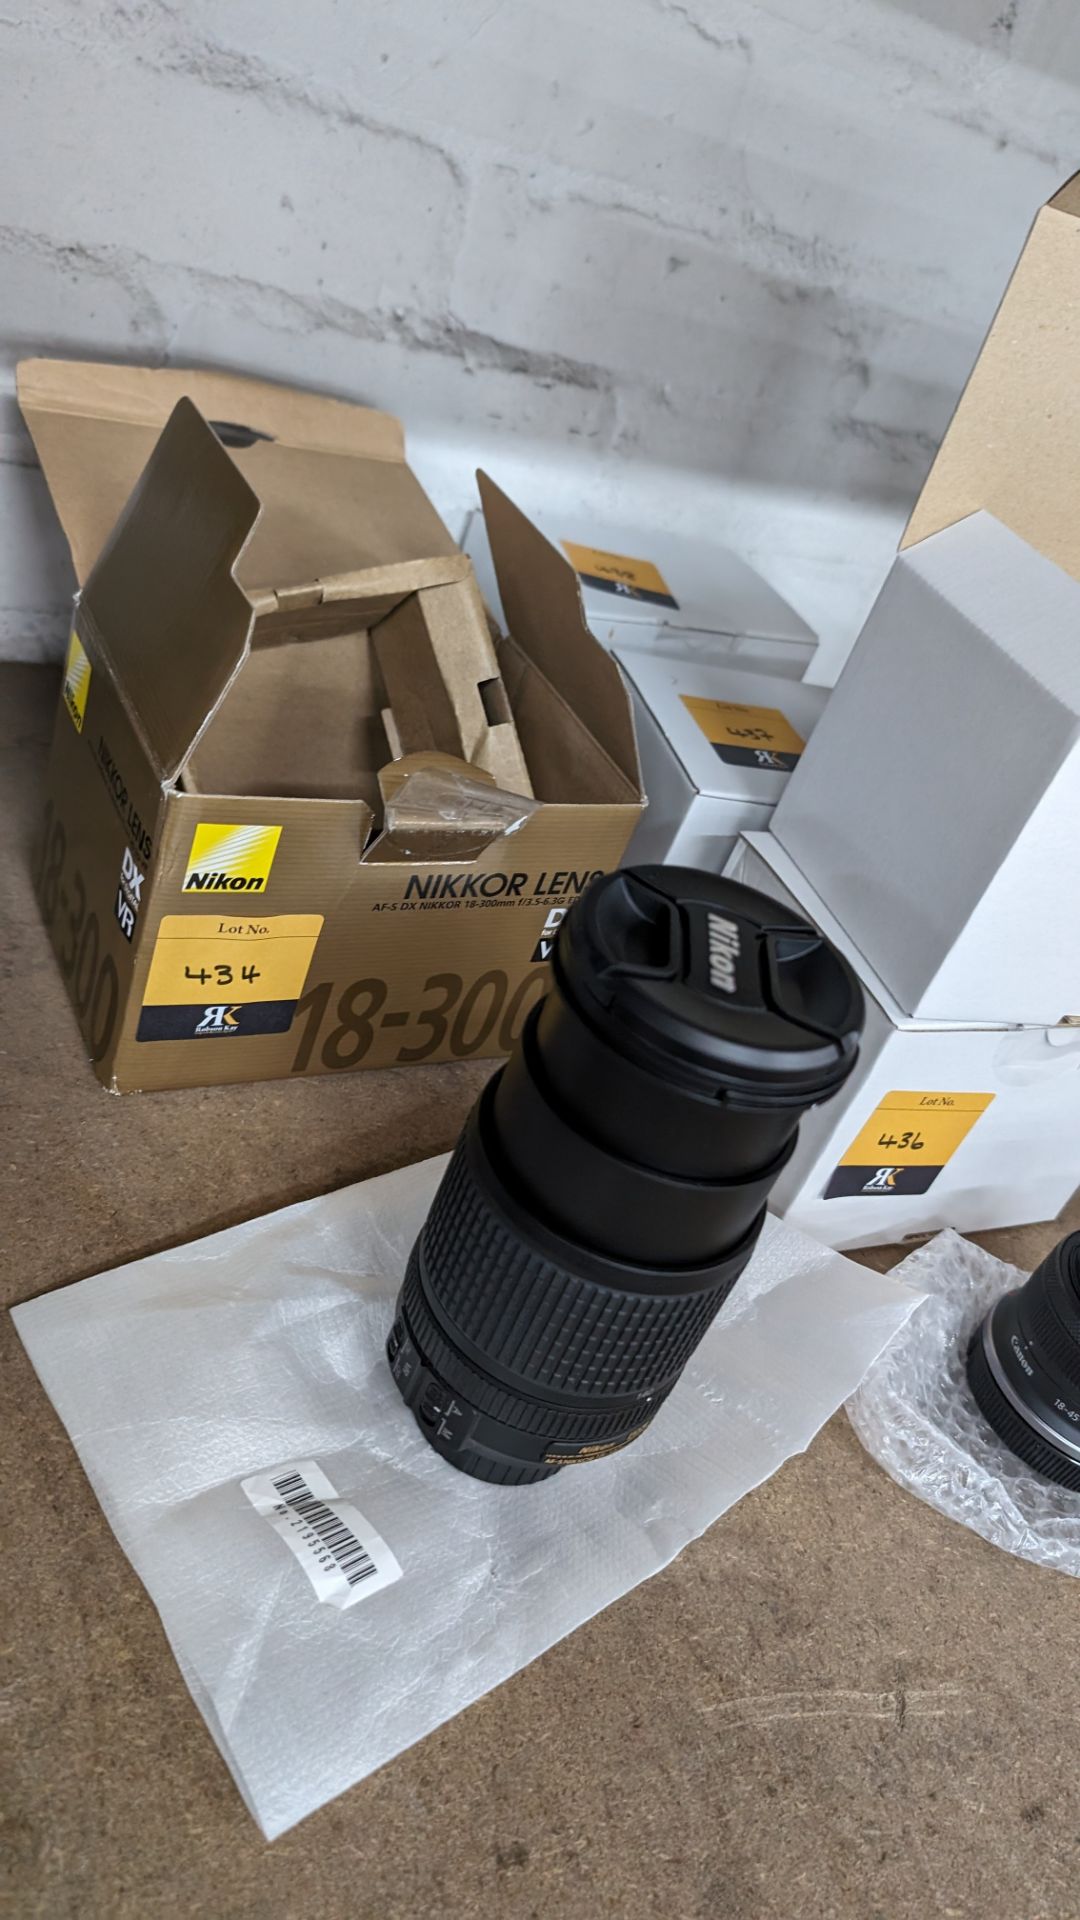 Nikon Nikkor lens AF-S DX Nikkor 18-140mm 1:3.5-5.6G ED VR - Bild 3 aus 13